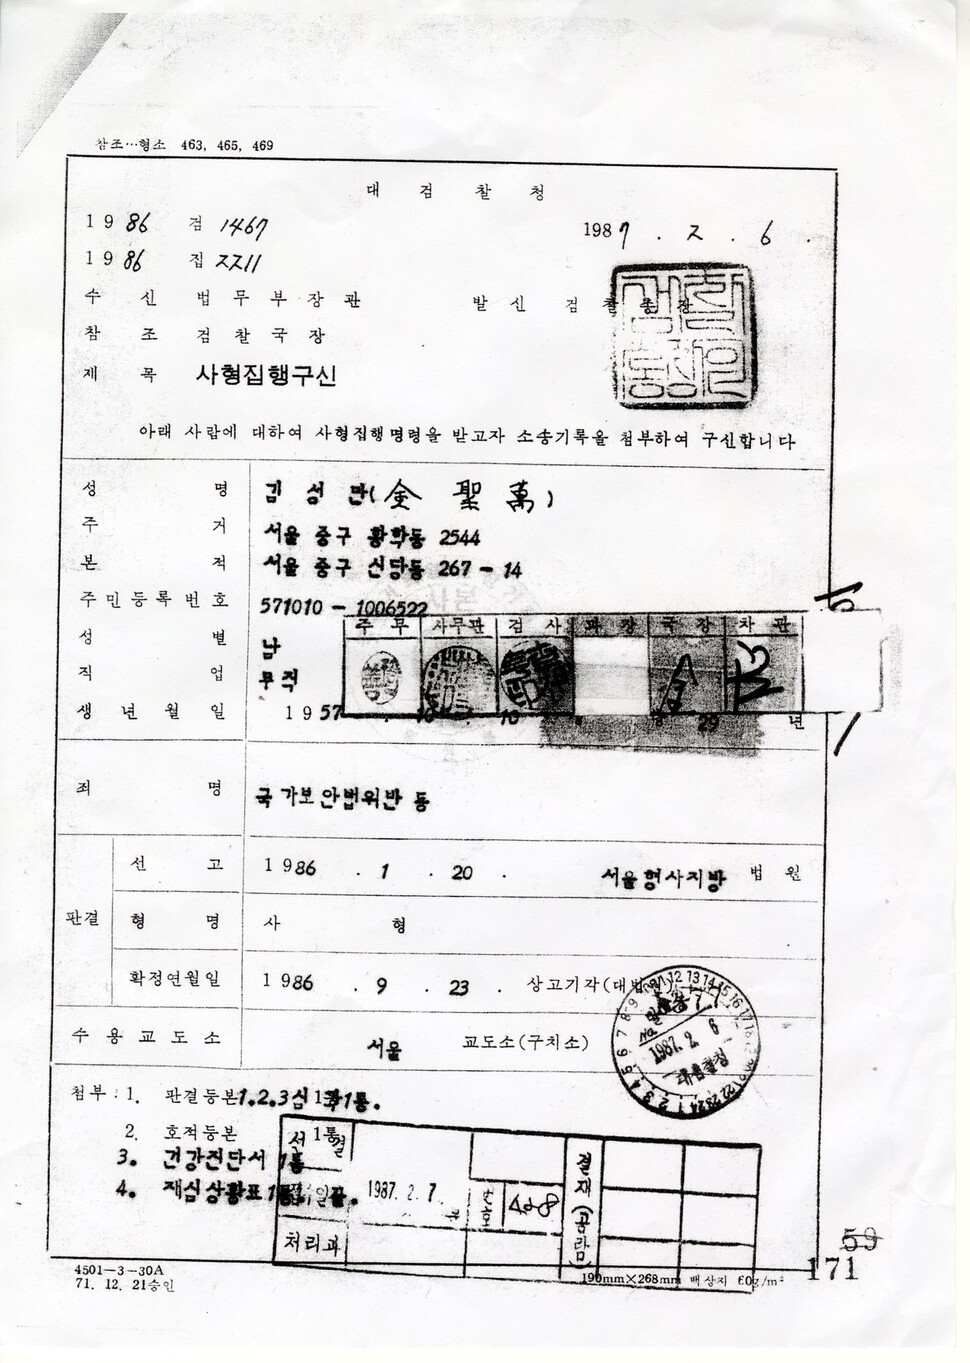 1987년 2월6일자로 당시 김성기 법무부 장관의 서명까지 이뤄졌던 김성만씨에 대한 ‘사형집행구신’장. 결재 뒤 계획이 취소돼 장관 결재란에는 흰 종이가 덮여 있다. 양동화씨에 대한 동일한 문서도 이번에 처음 발견됐다. 김성만 제공